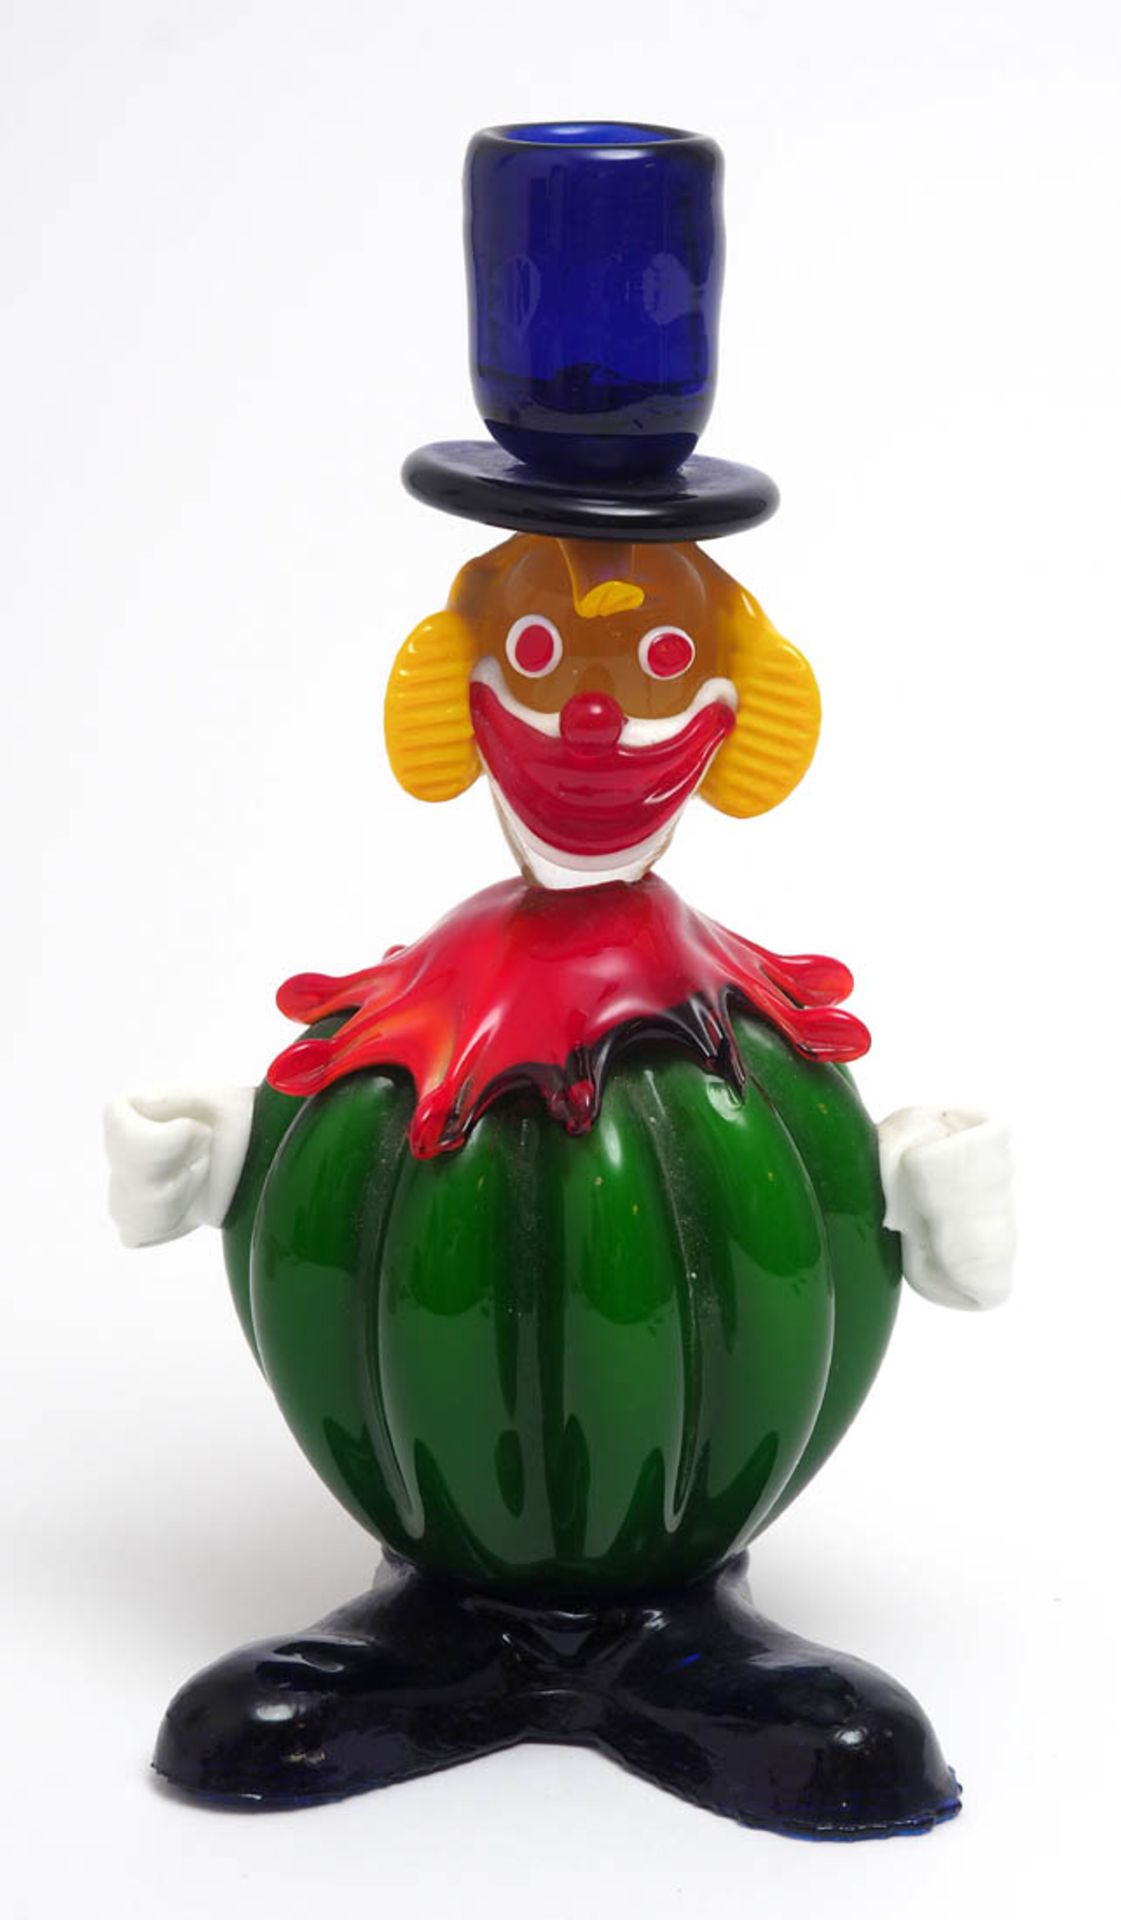 Kerzenhalter in Form eines Clowns, Murano Verschiedenfarbiges Glas. H.22,5cm. - Bild 2 aus 4